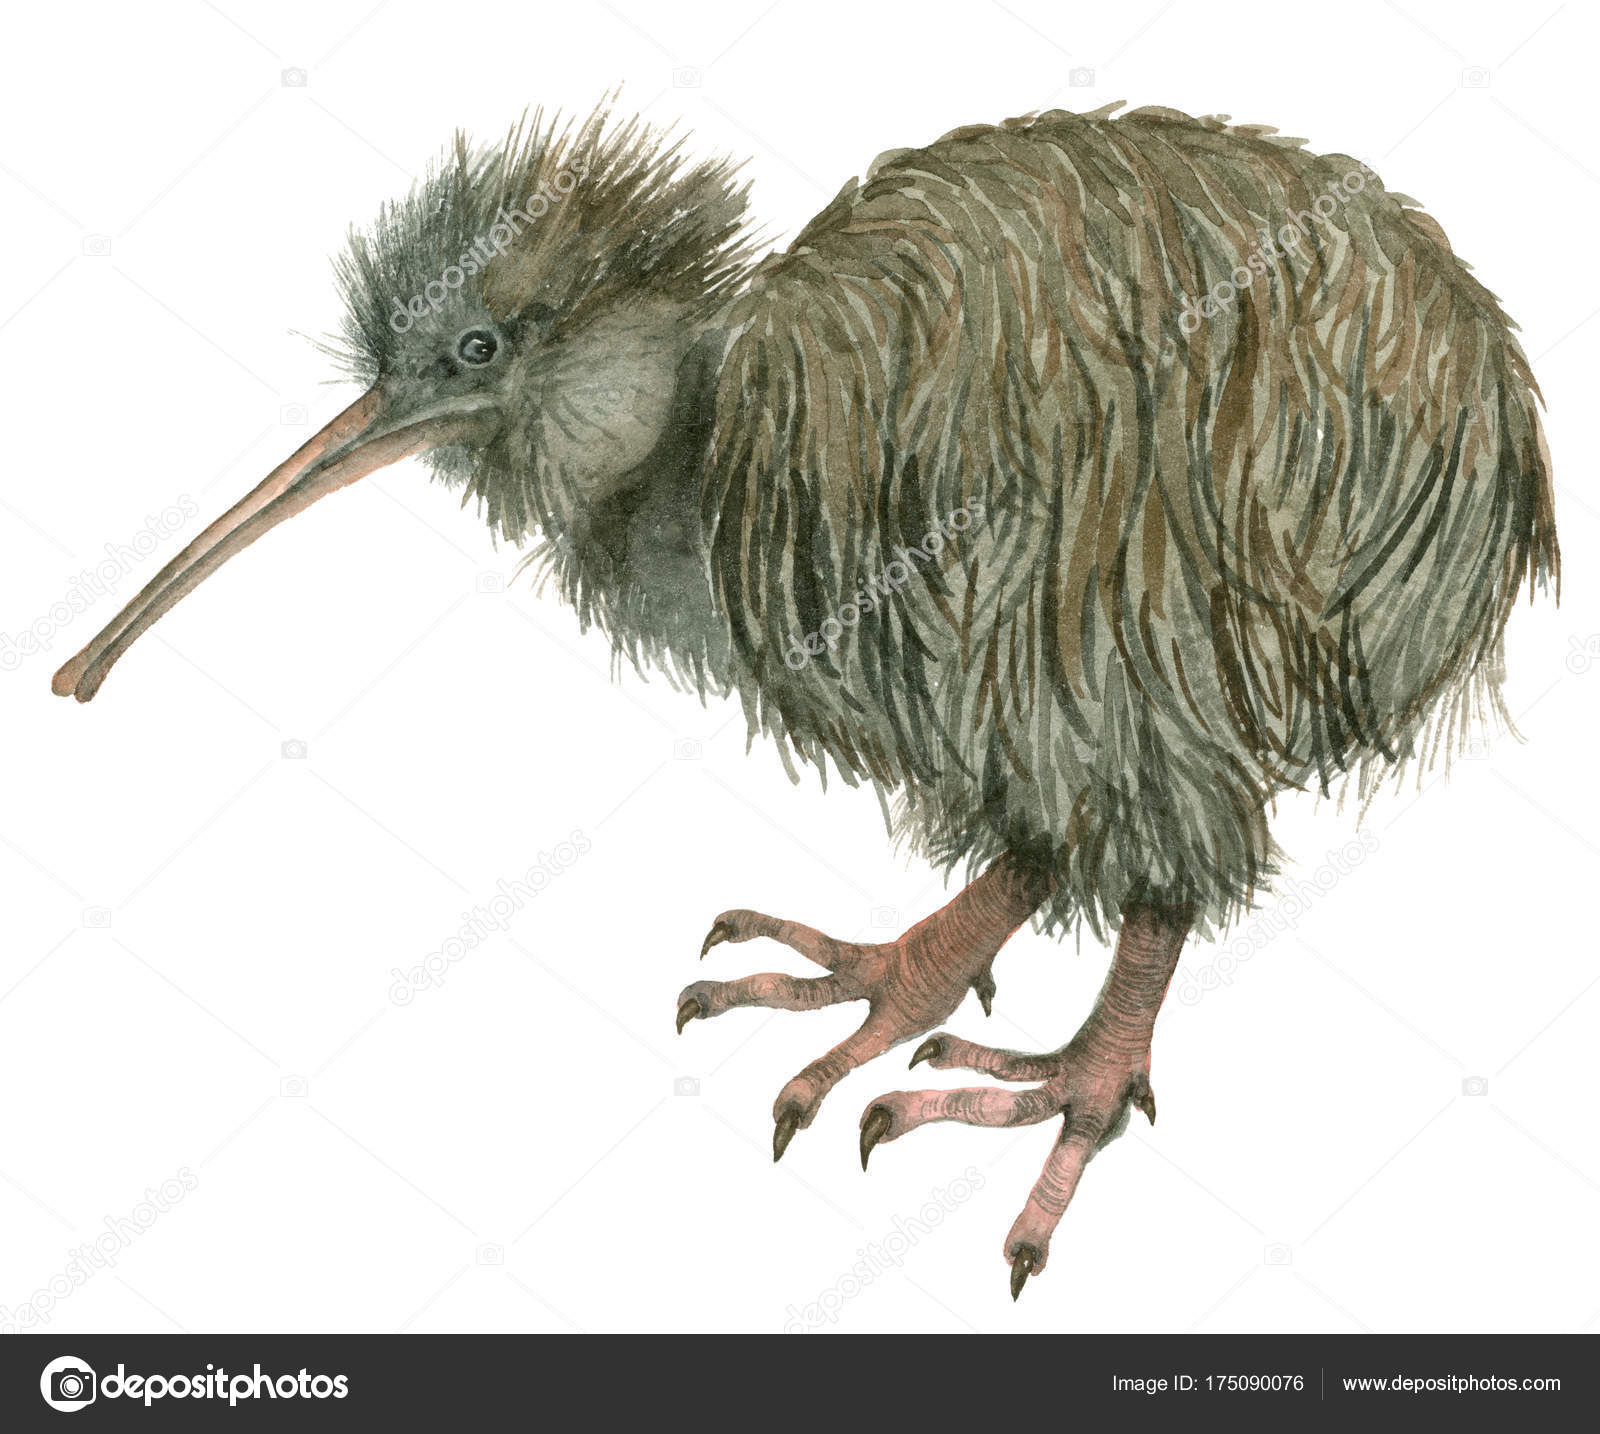 Kiwi bird Stock Photos, Royalty Free Kiwi bird Images | Depositphotos